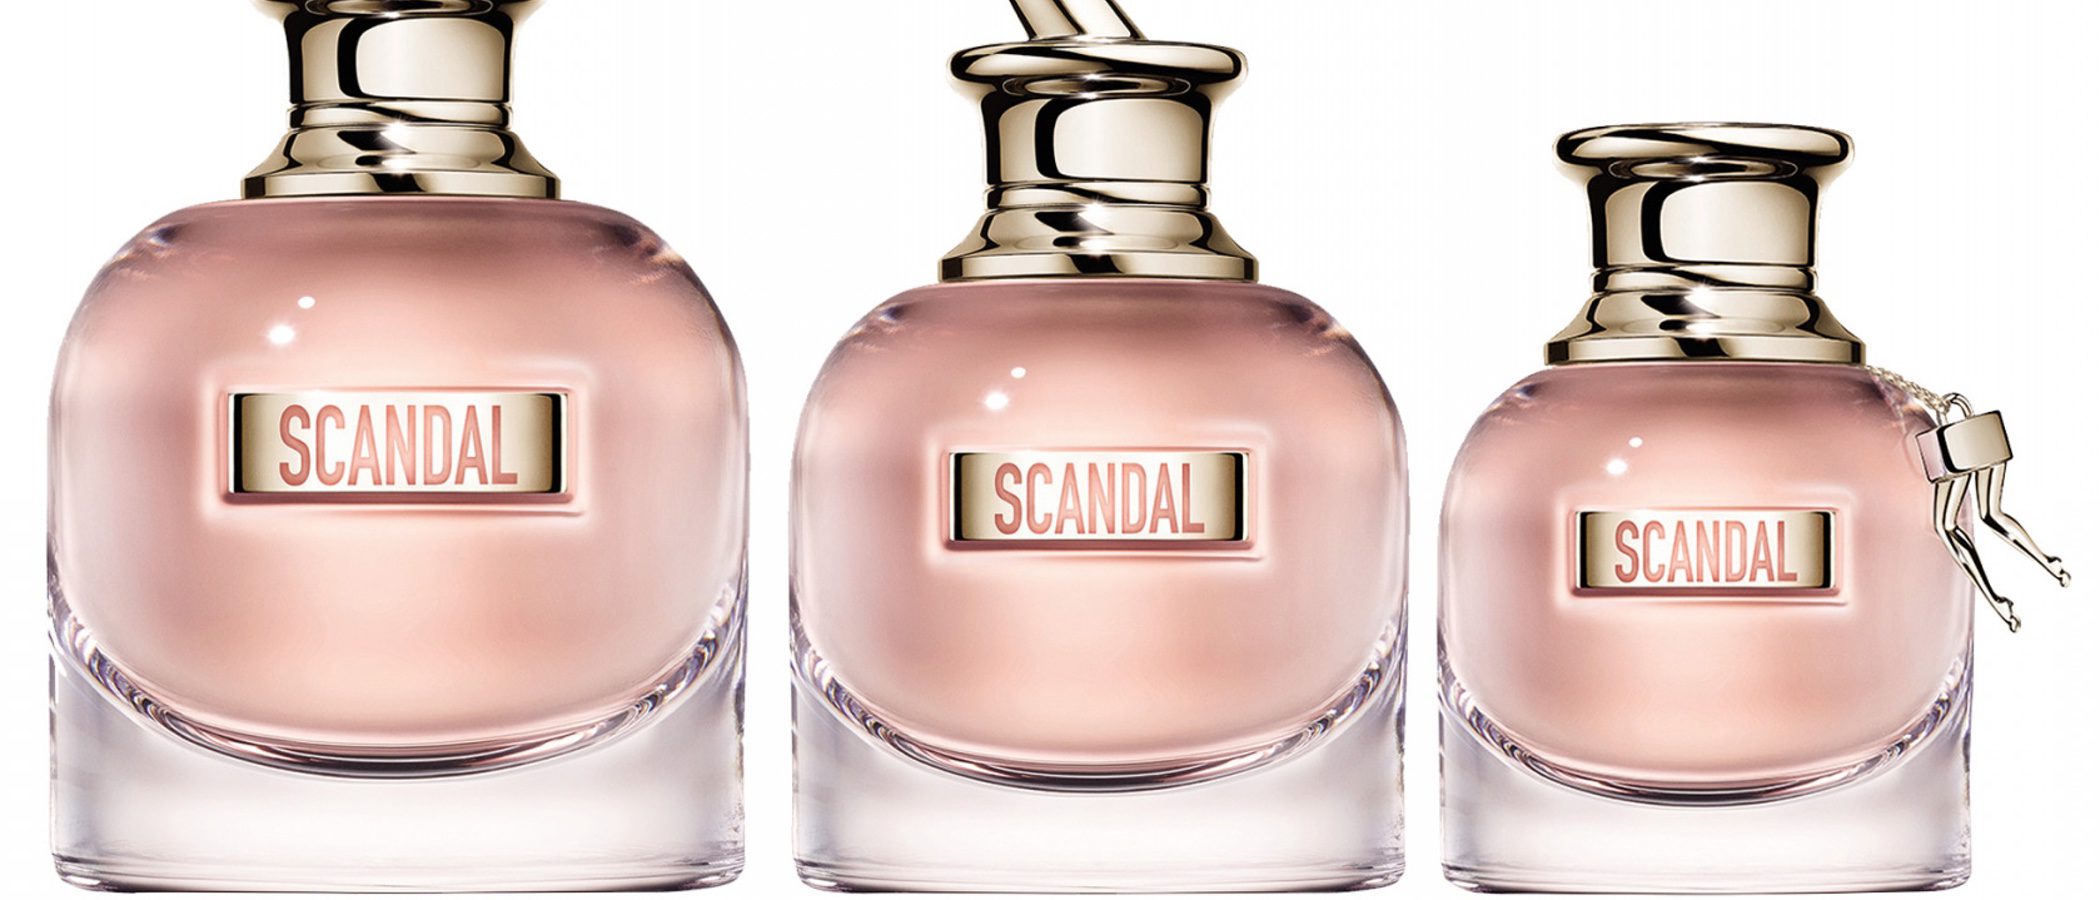 Jean Paul Gaultier presenta su nueva fragancia para este verano 2017: 'Scandal'